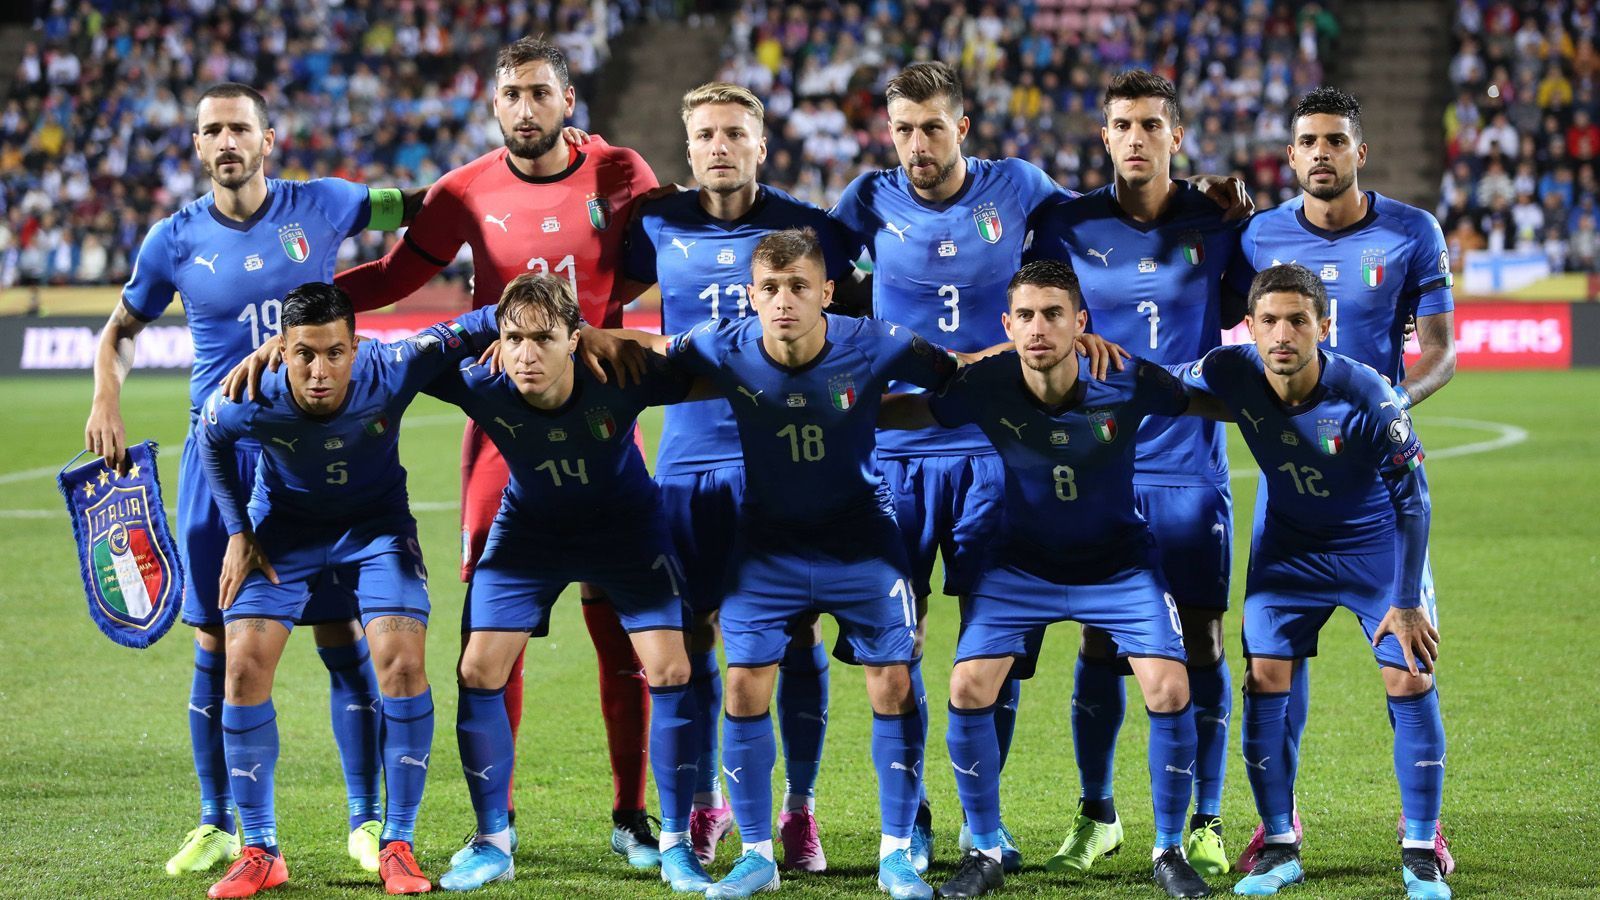 
                <strong>Italien</strong><br>
                Platz 1 in der Gruppe J mit Finnland, Griechenland, Armenien, Bosnien-Herzegowina und Liechtenstein
              